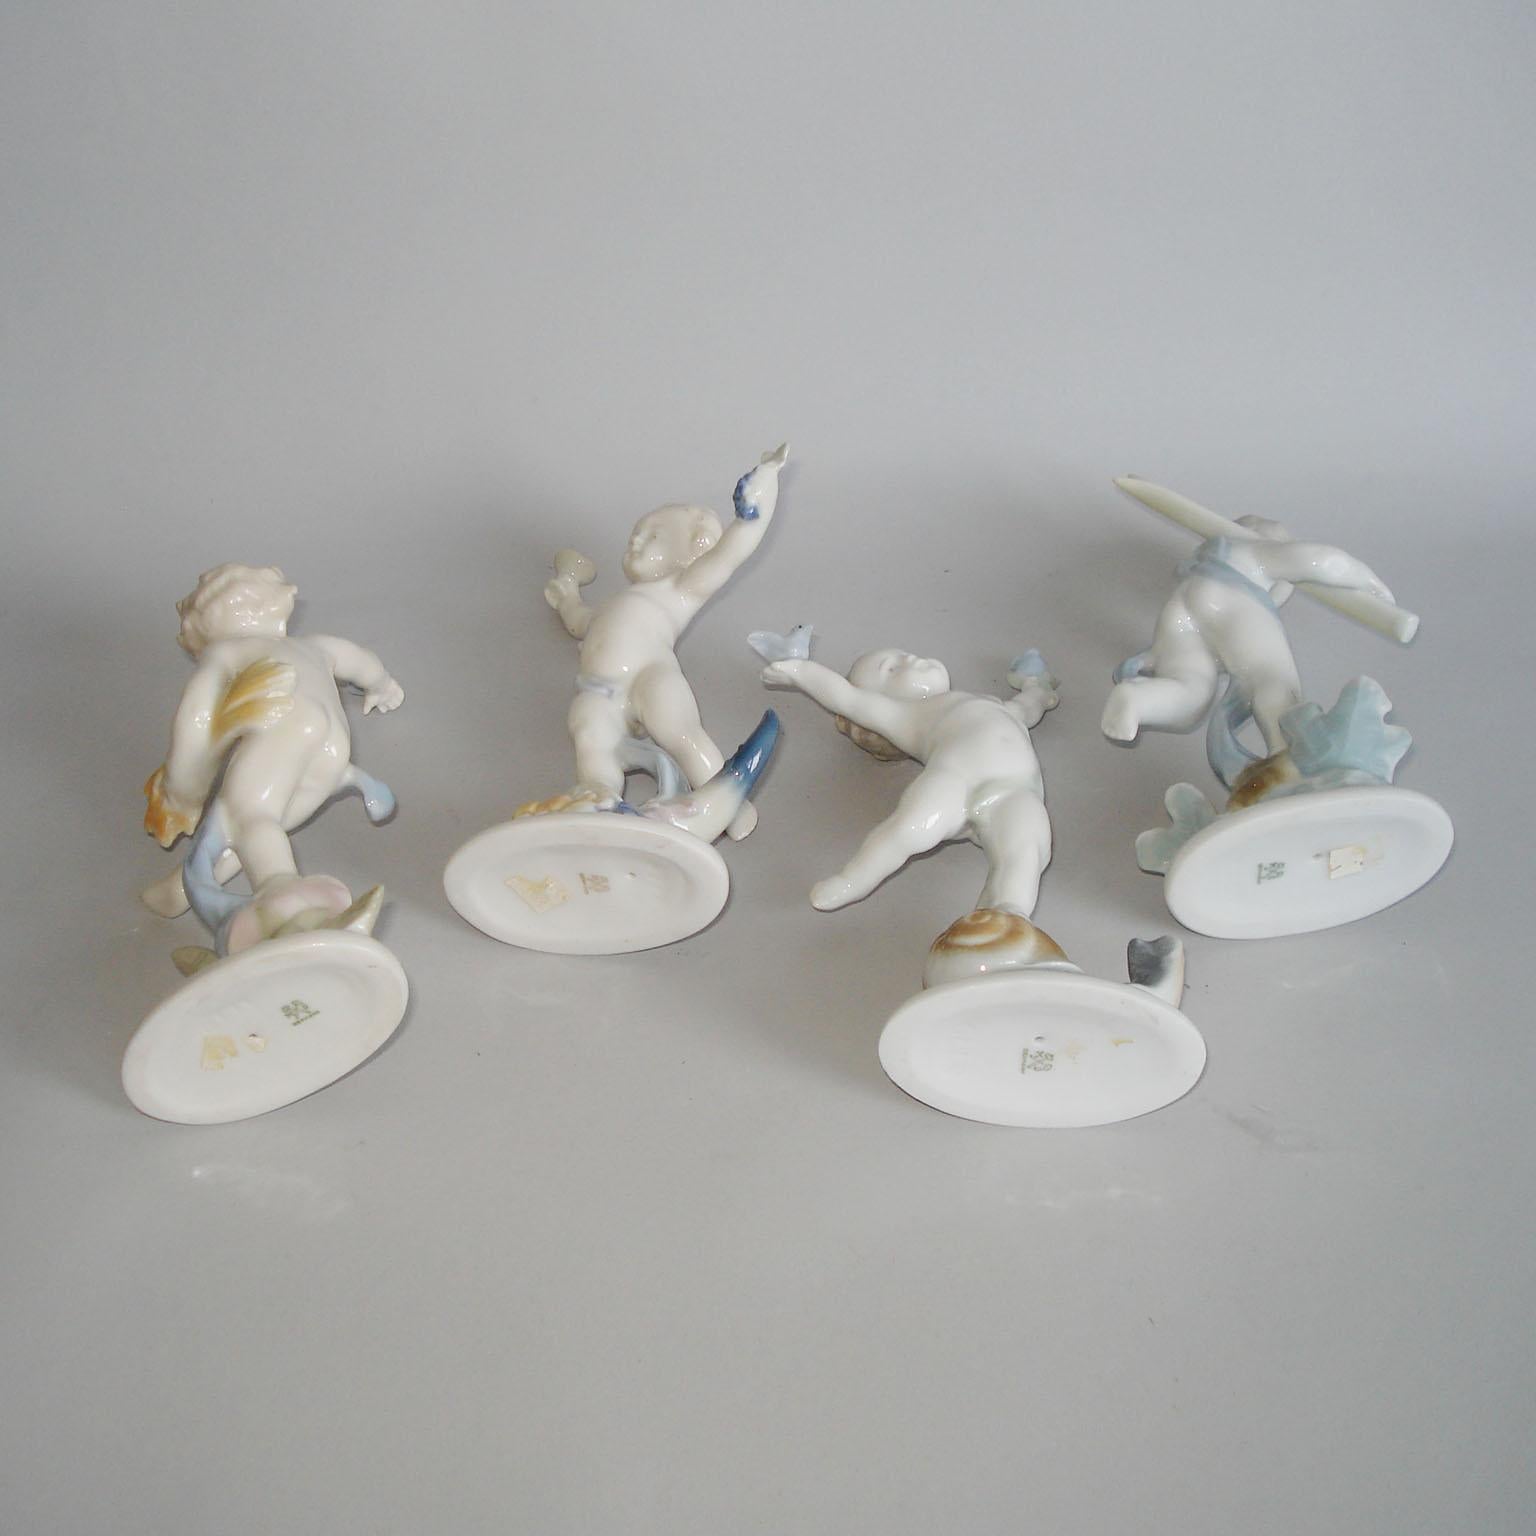 Hand-Painted Vintage Ilmenau German Porcelain Figurines